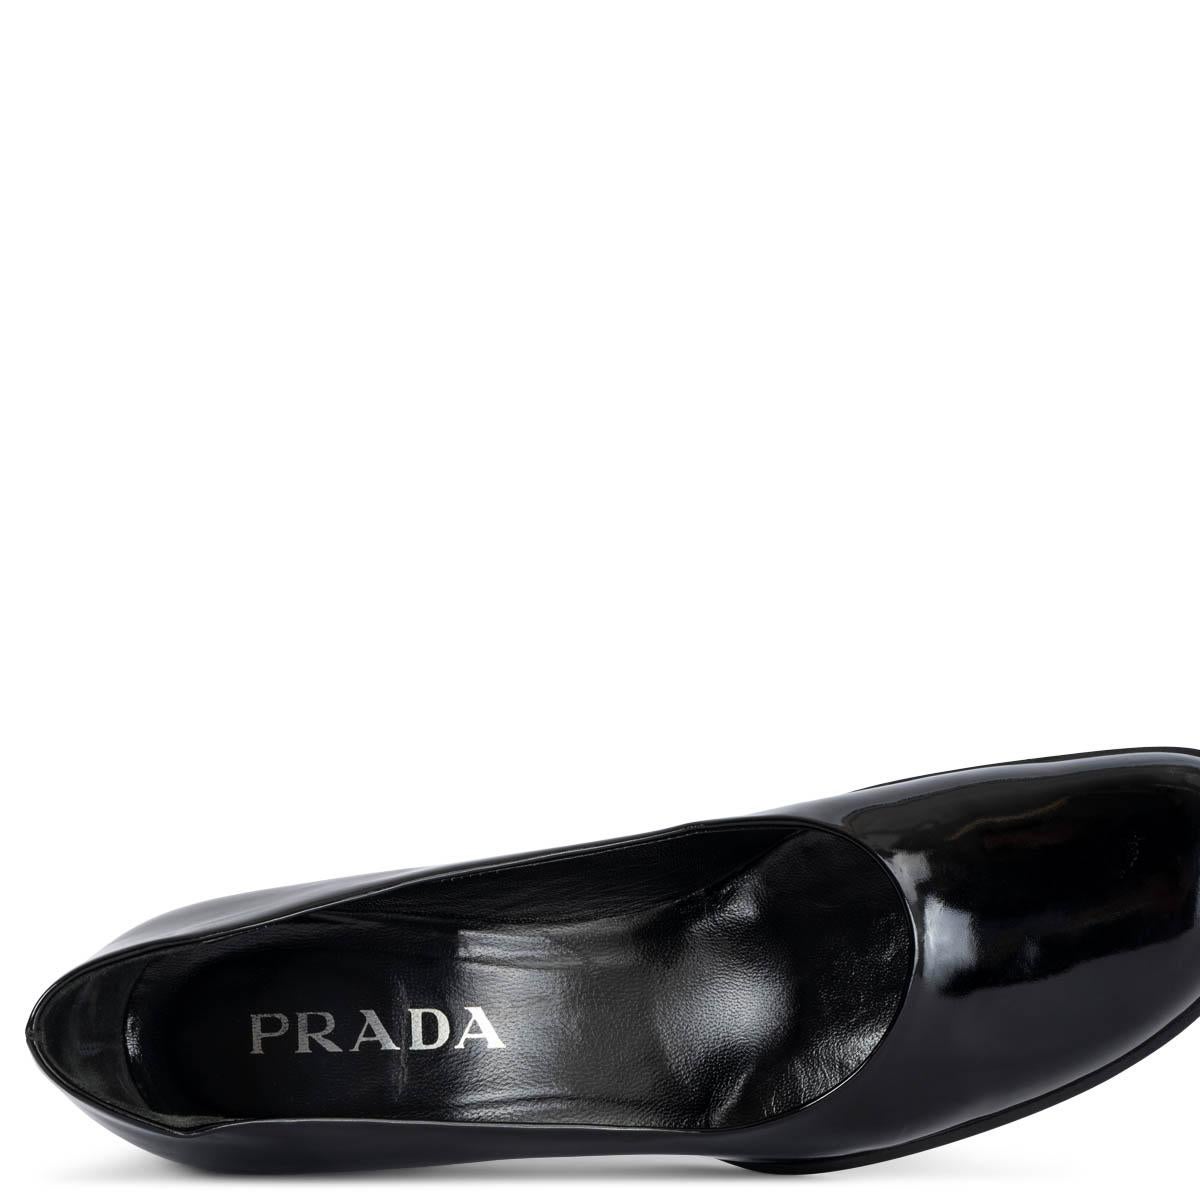 PRADA black patent leather VINTAGE Pumps Shoes 37.5 4